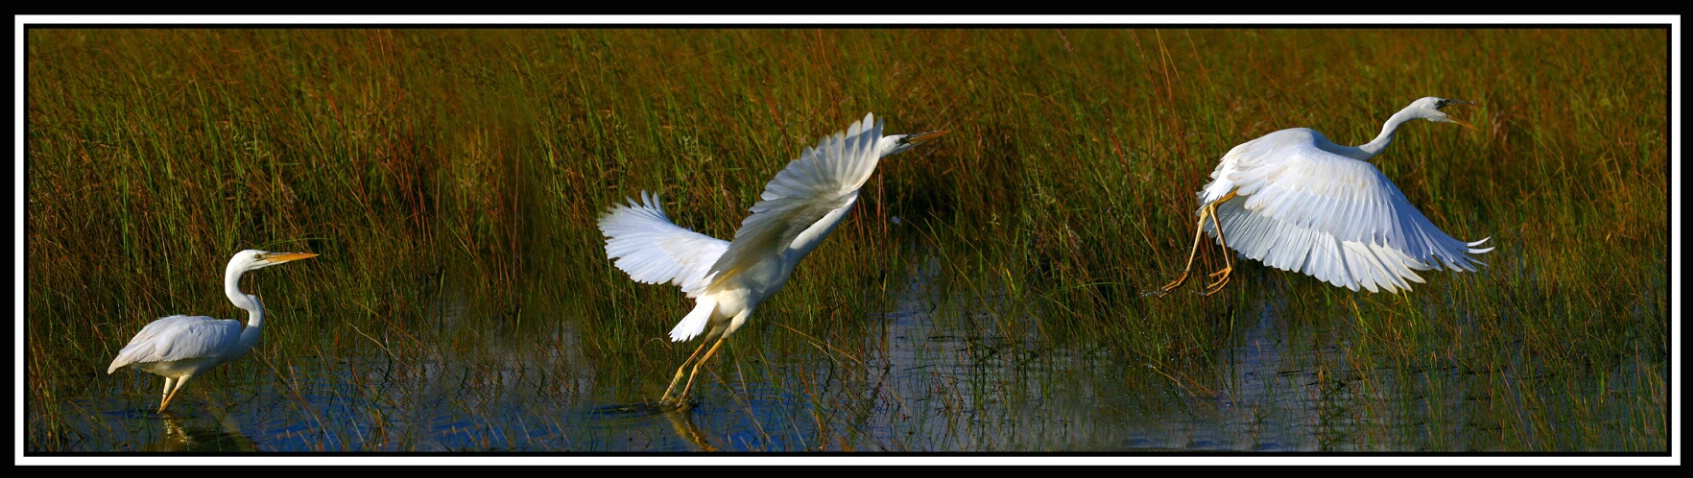 White Heron takes flight...